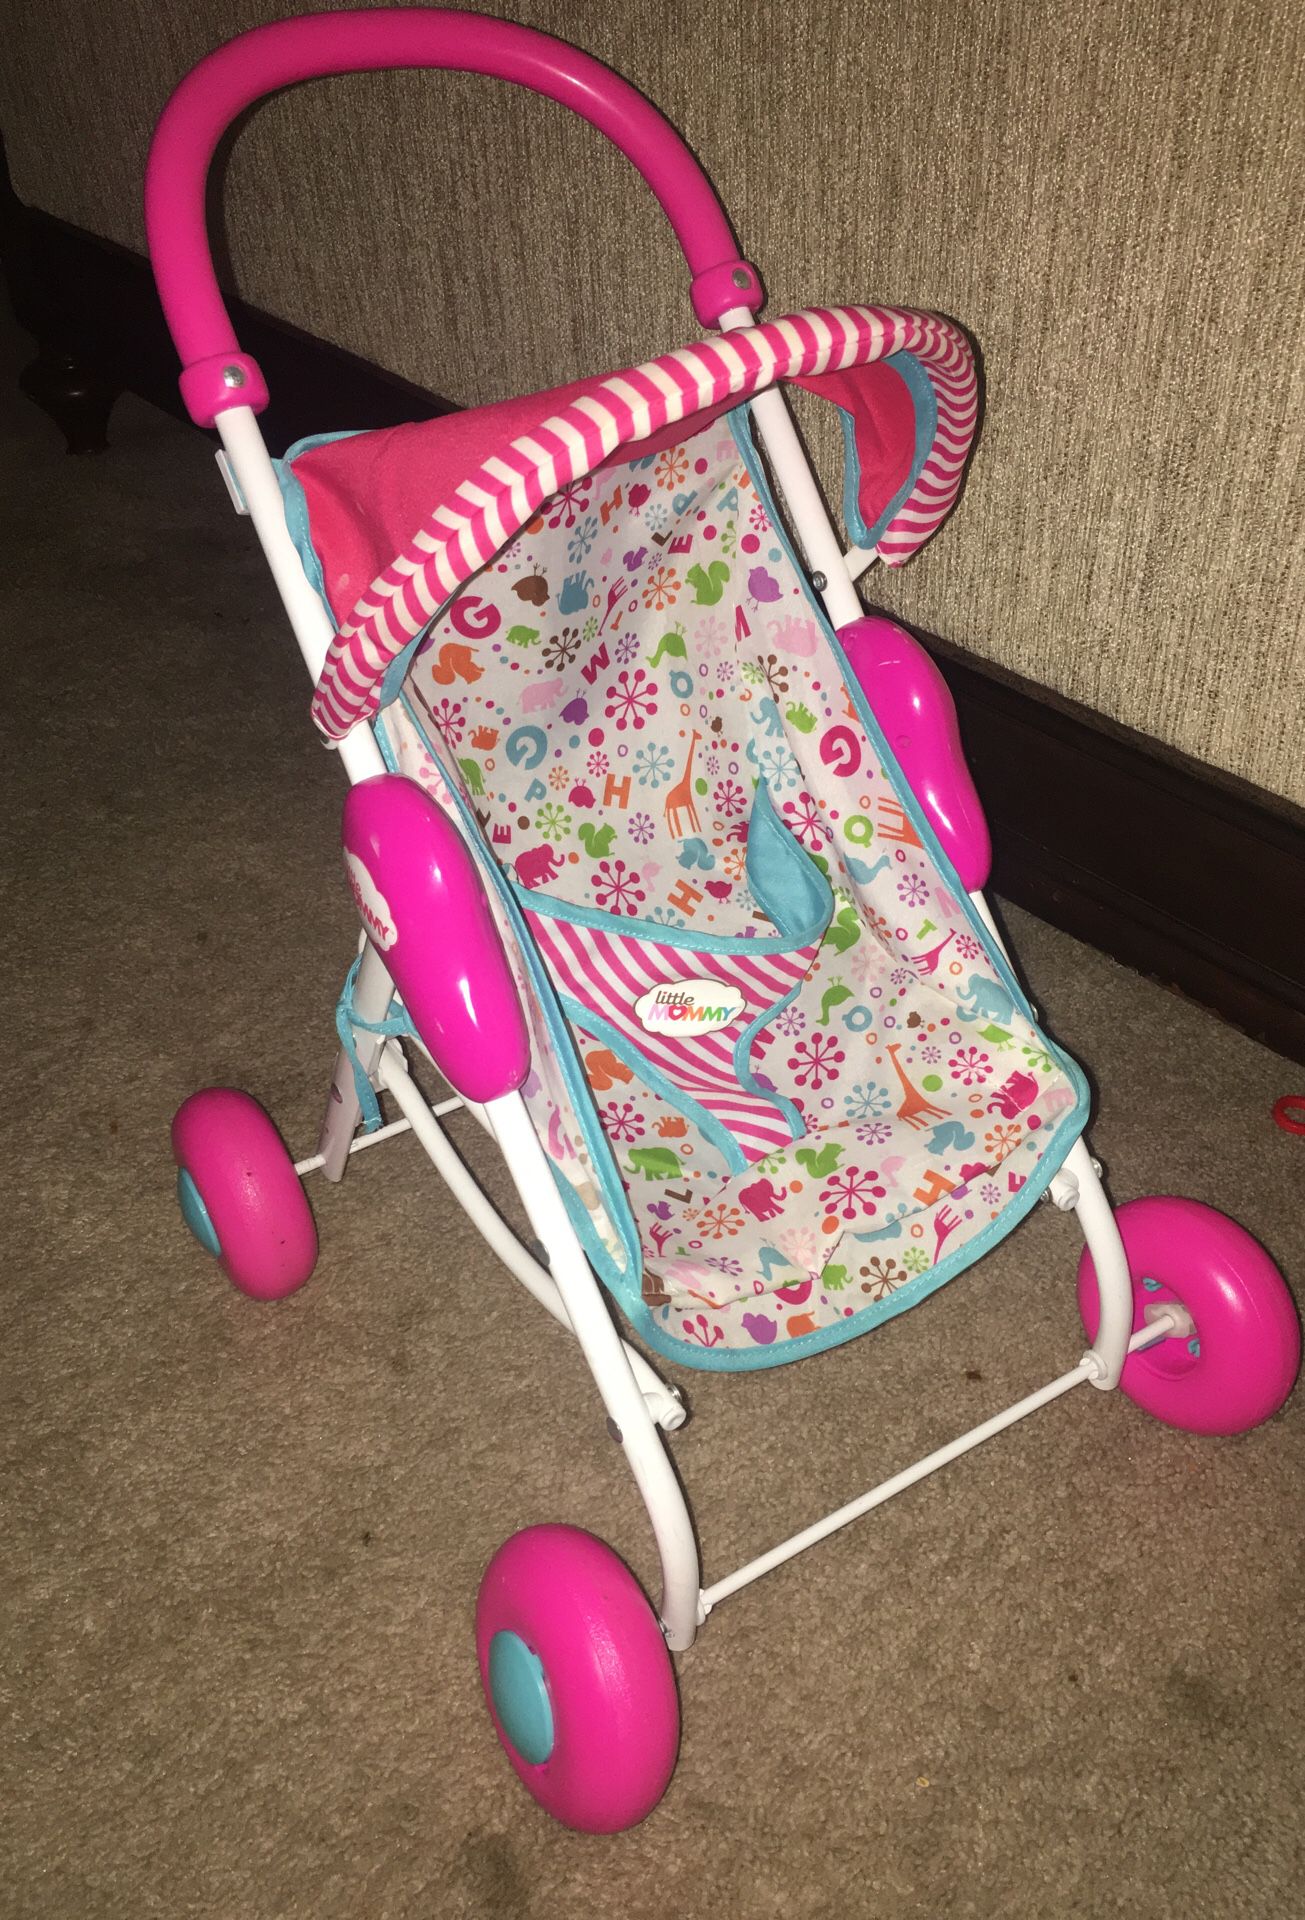 Baby doll stroller